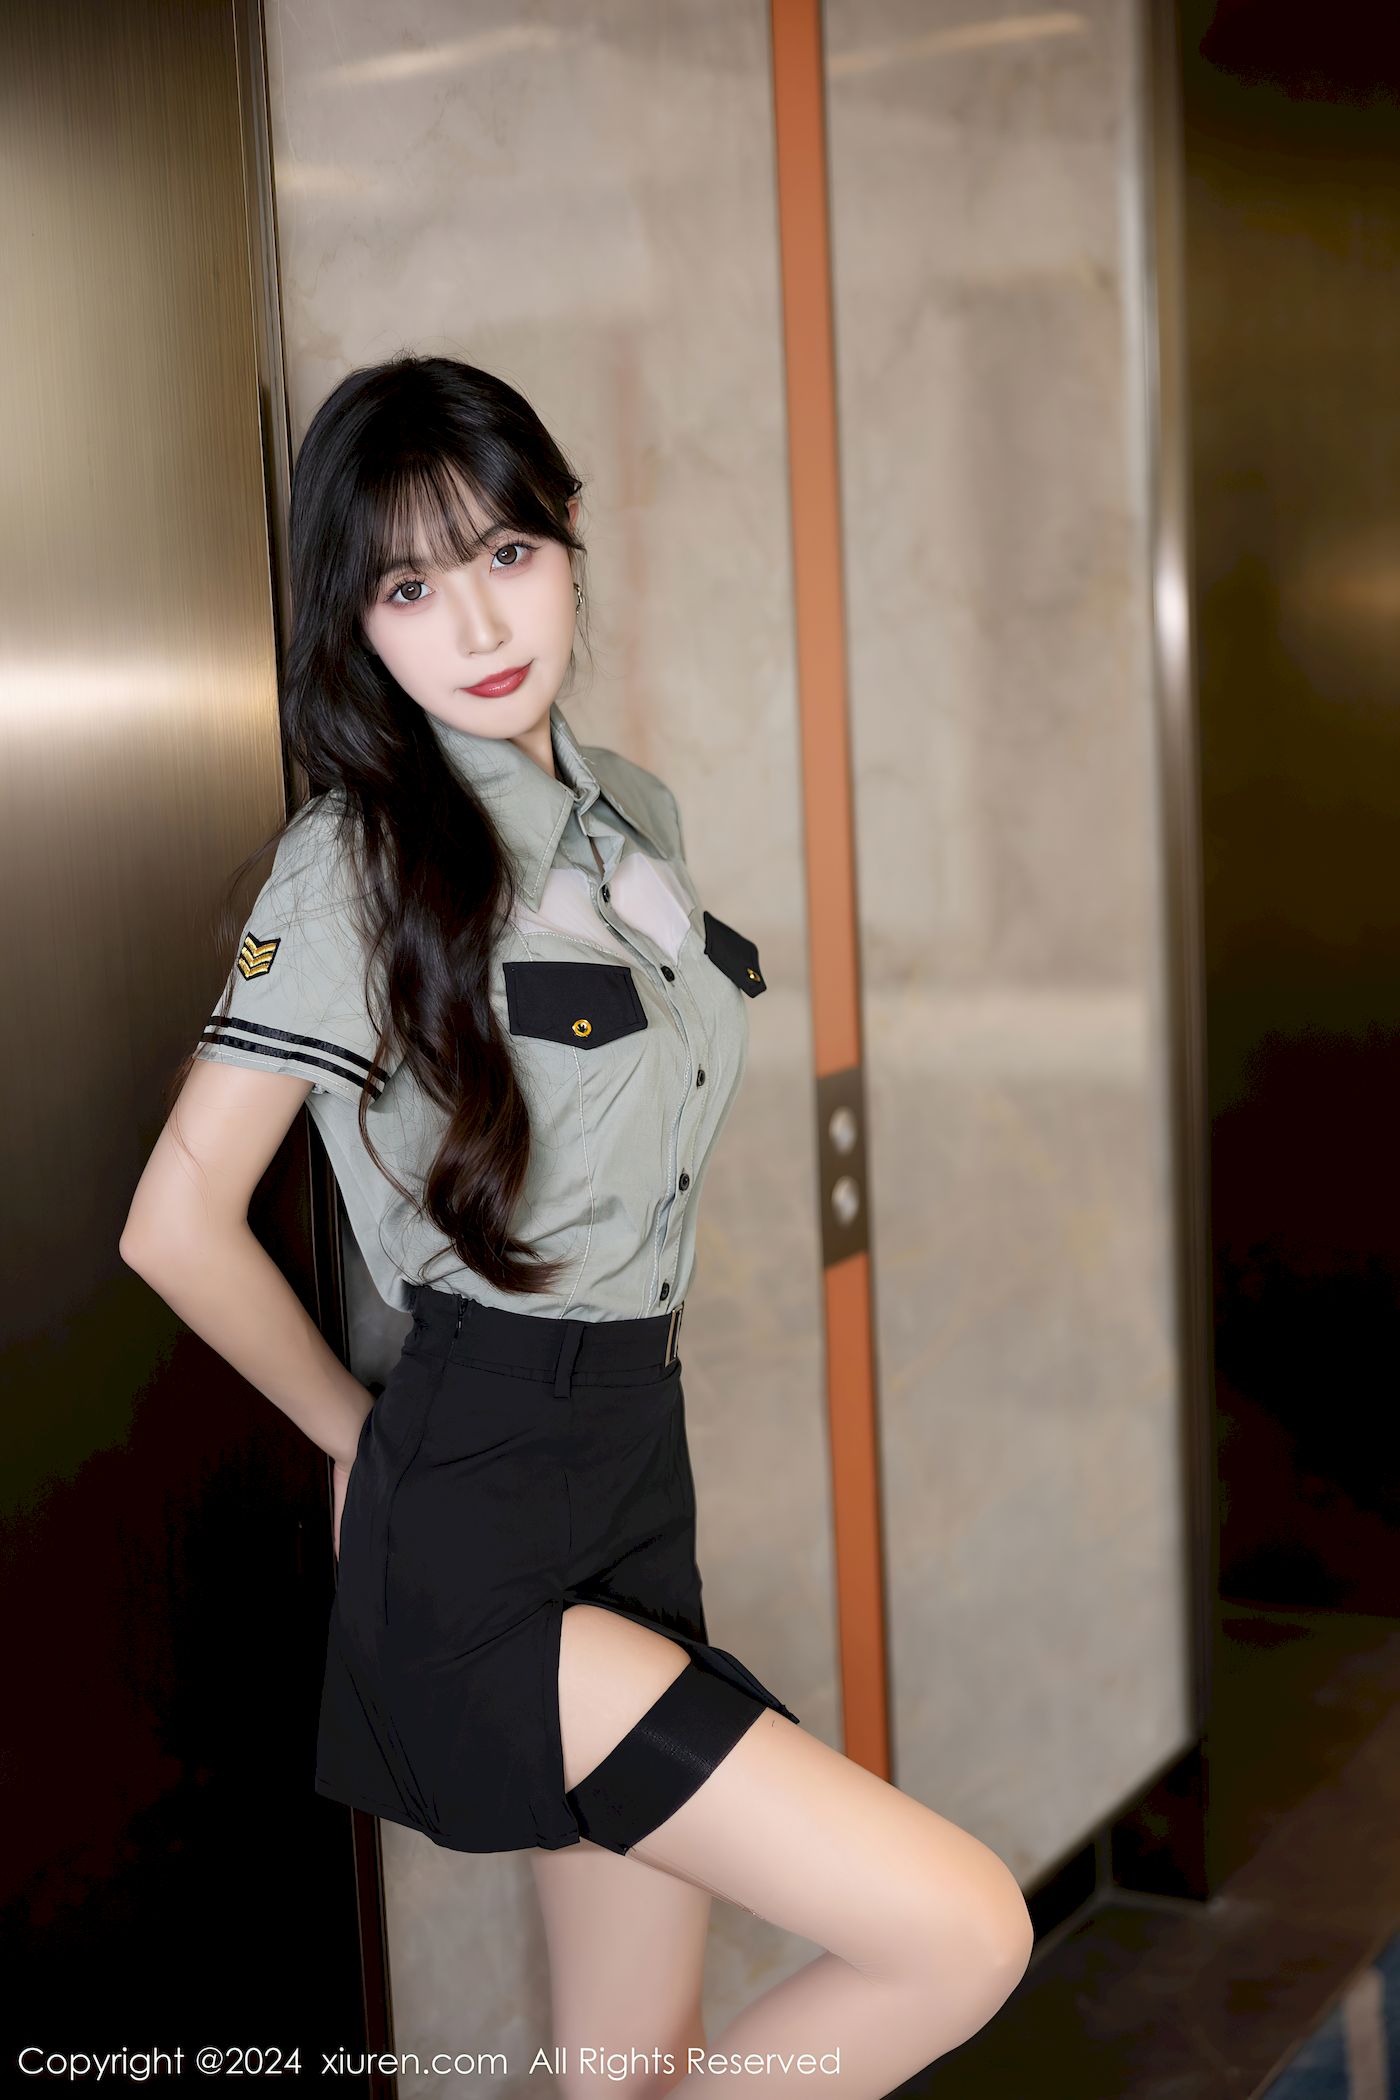 林星阑女警制服搭配原色丝袜甜美写真